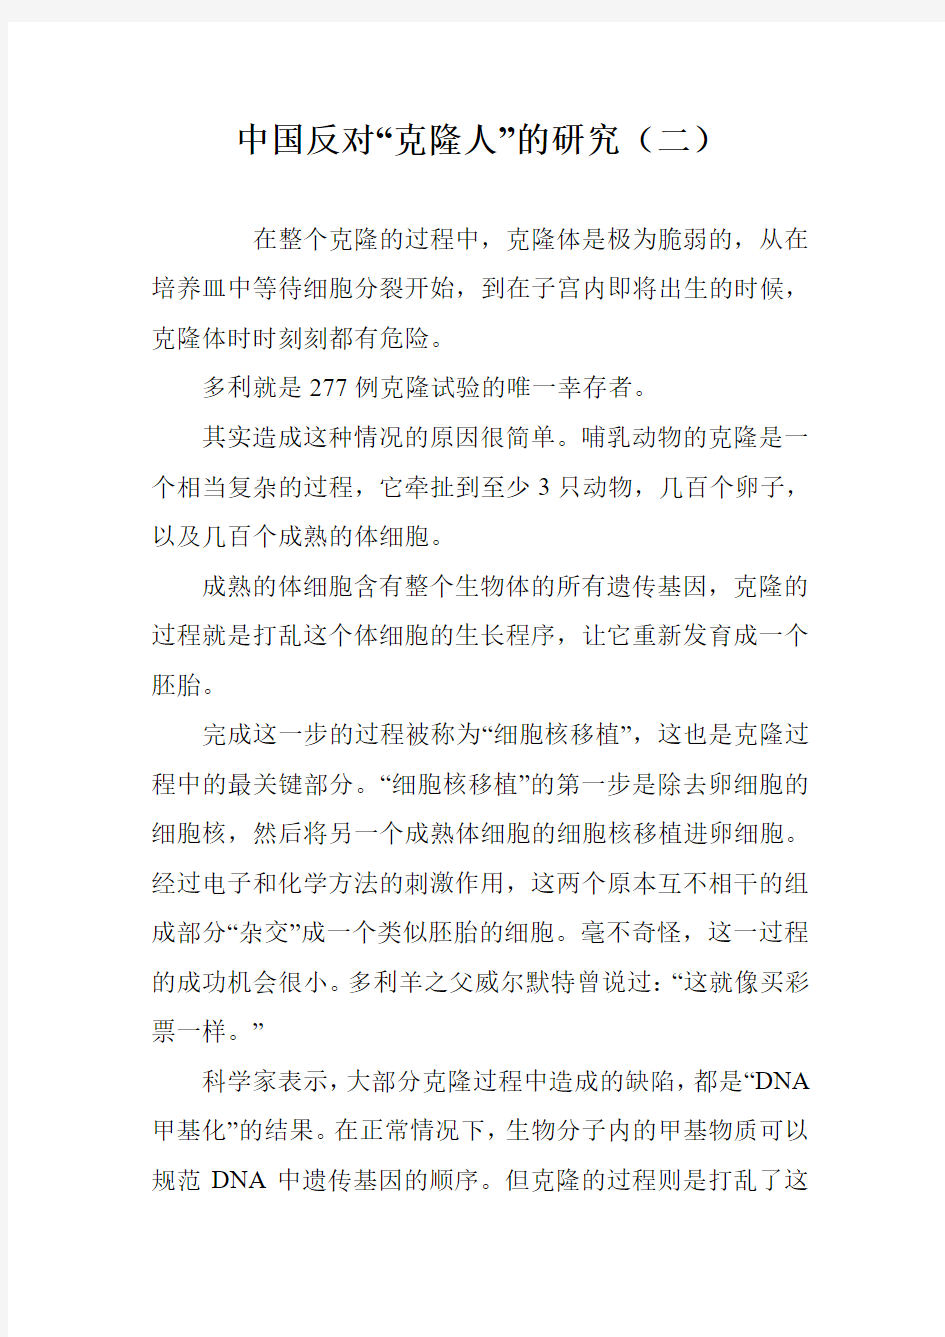 中国反对“克隆人”的研究(二)